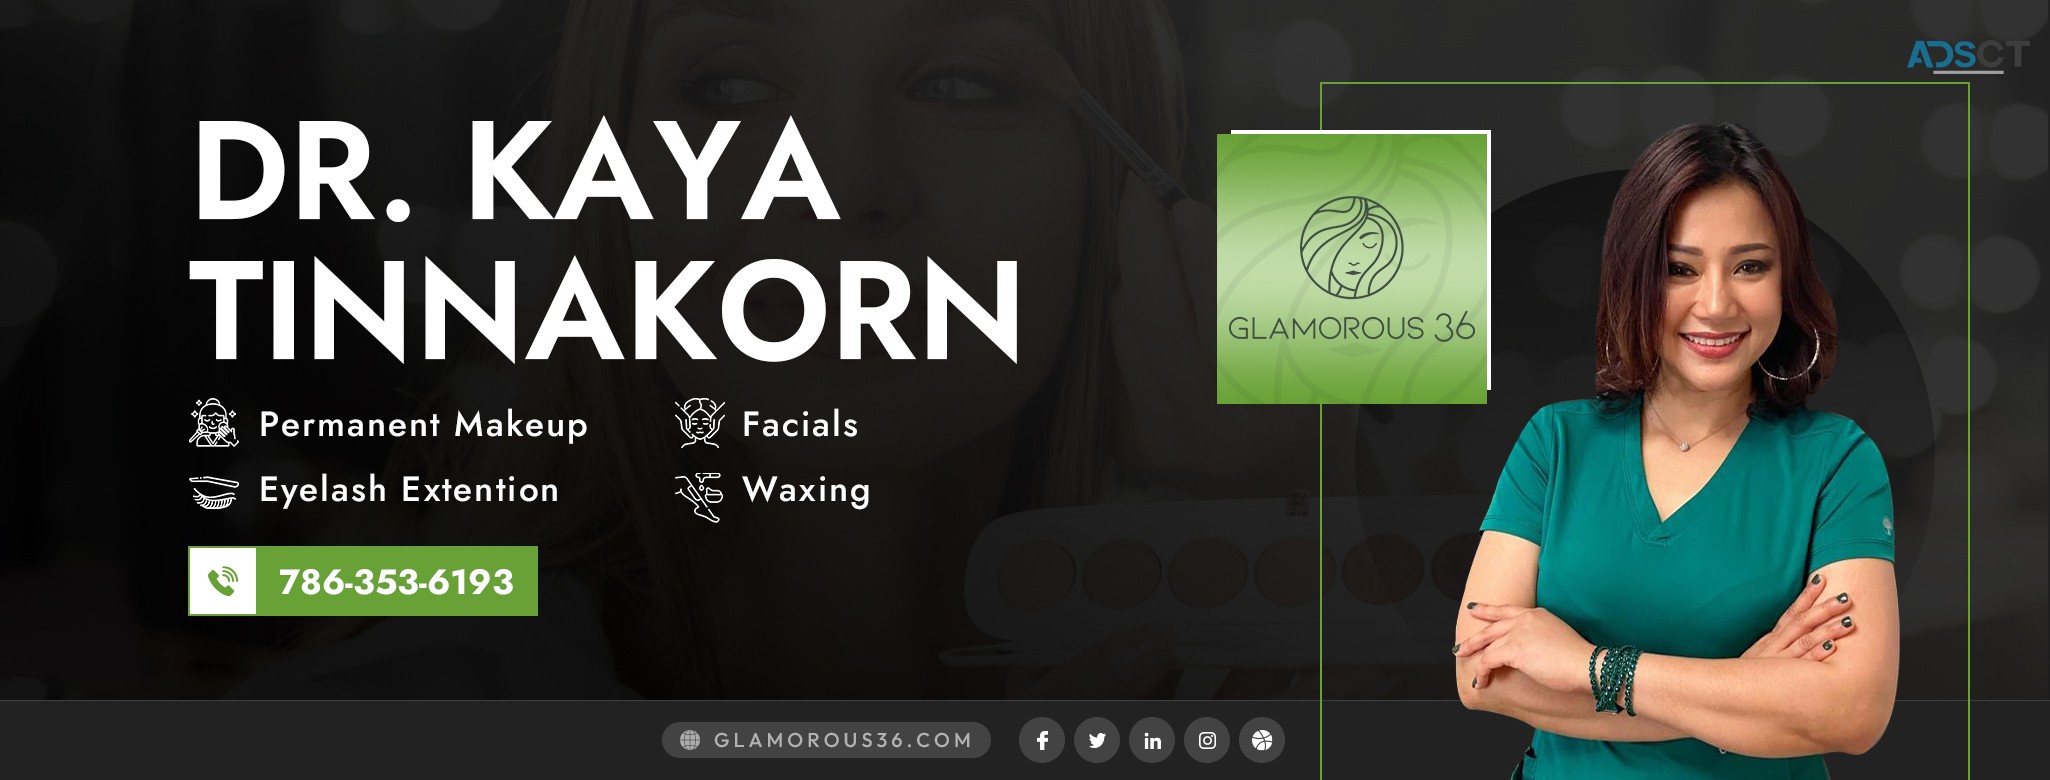 Glamorous36 | Permanent Makeup, Eyelash Extension, & More In Largo